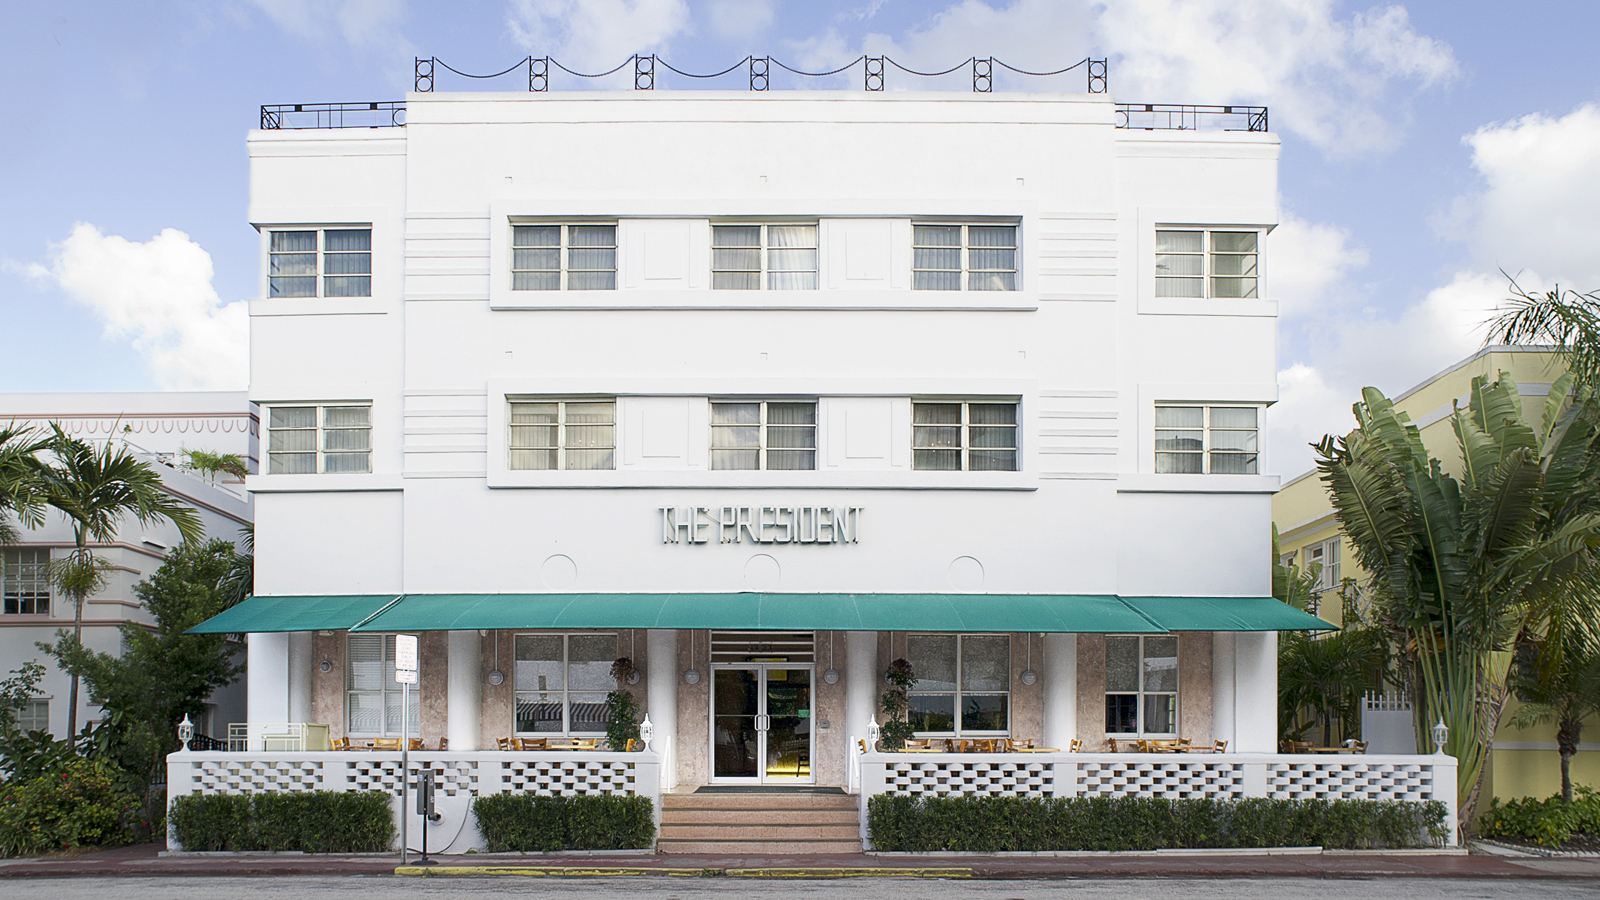 Photo of President Hotel South Beach, Miami Beach, FL